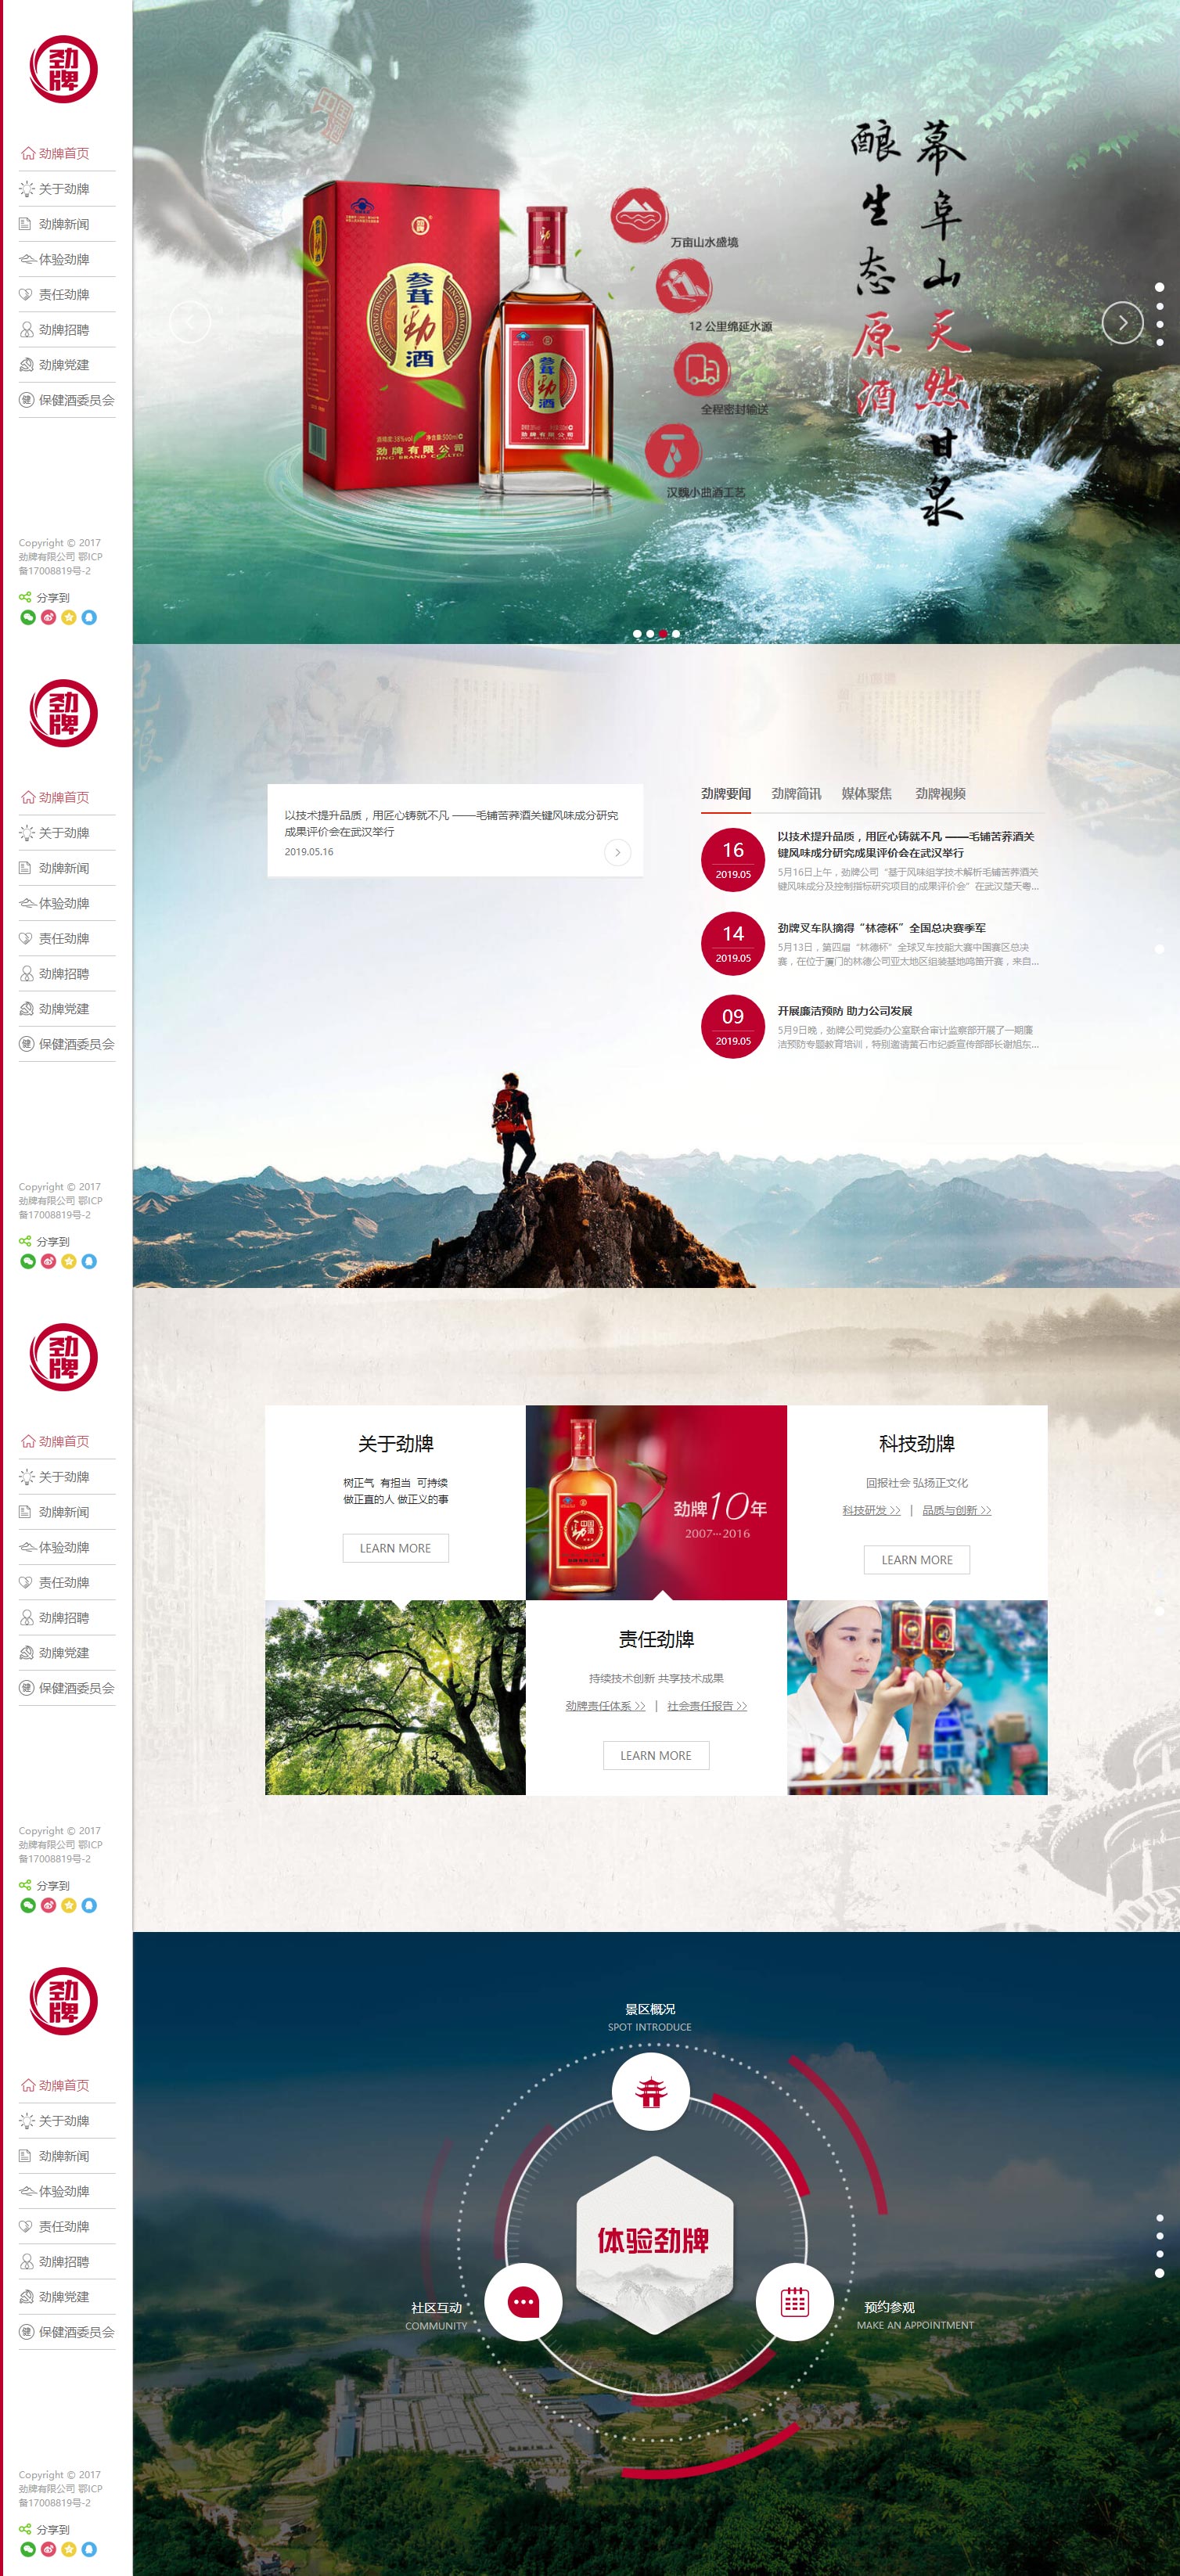 中国劲酒 企业网站设计,集团网站设计,大型品牌网站设计 广州实力网站设计公司 